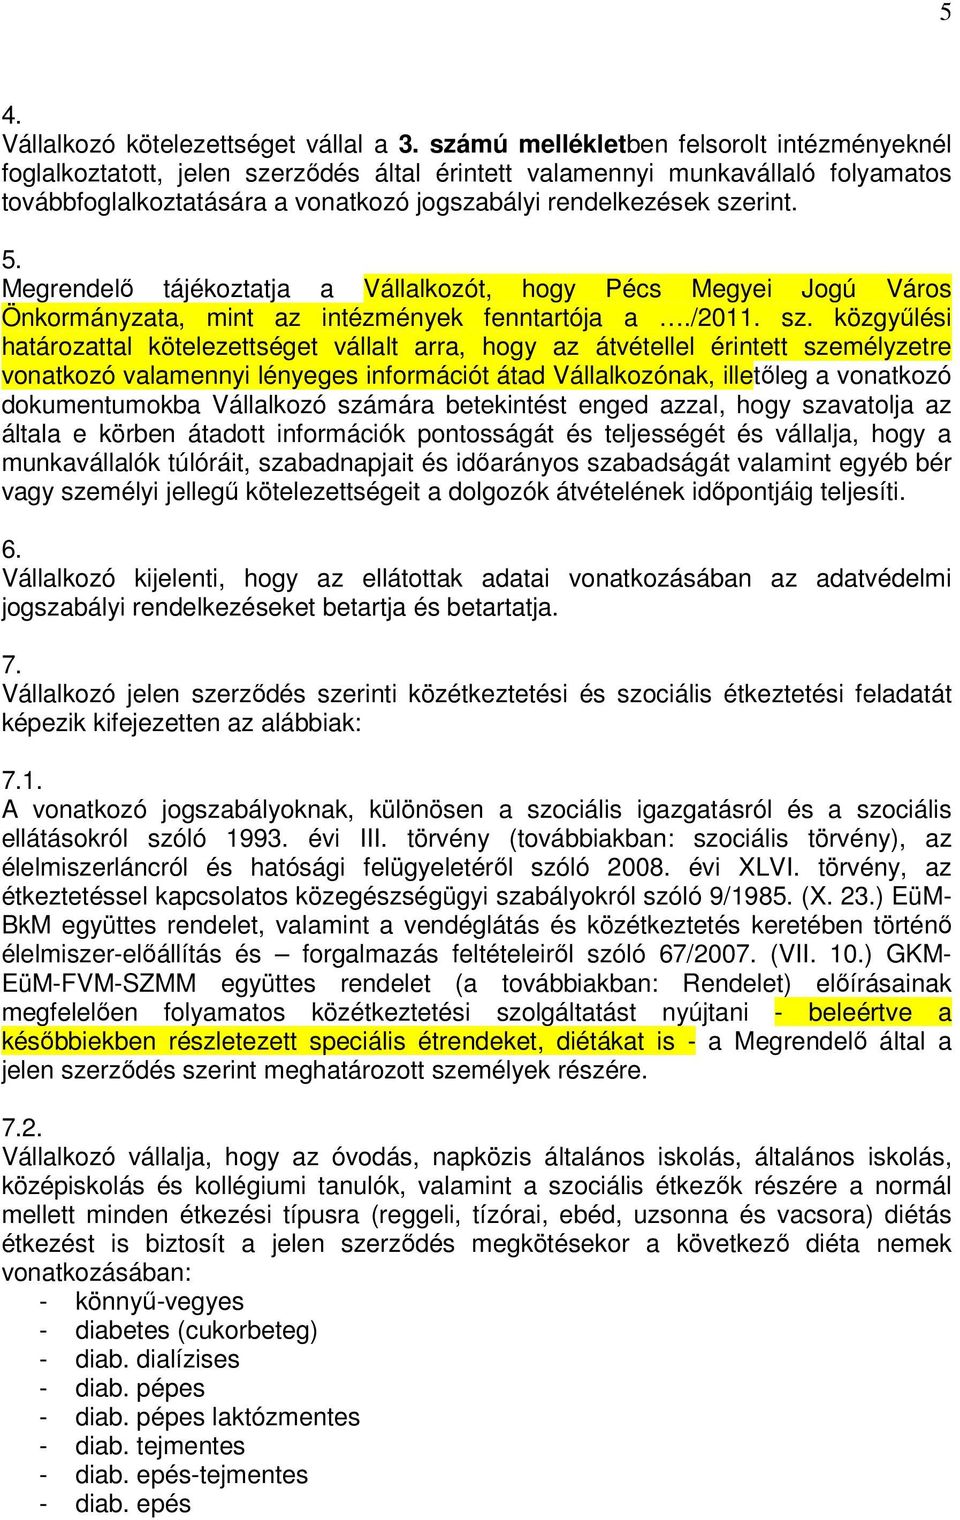 Megrendelı tájékoztatja a Vállalkozót, hogy Pécs Megyei Jogú Város Önkormányzata, mint az intézmények fenntartója a./2011. sz.